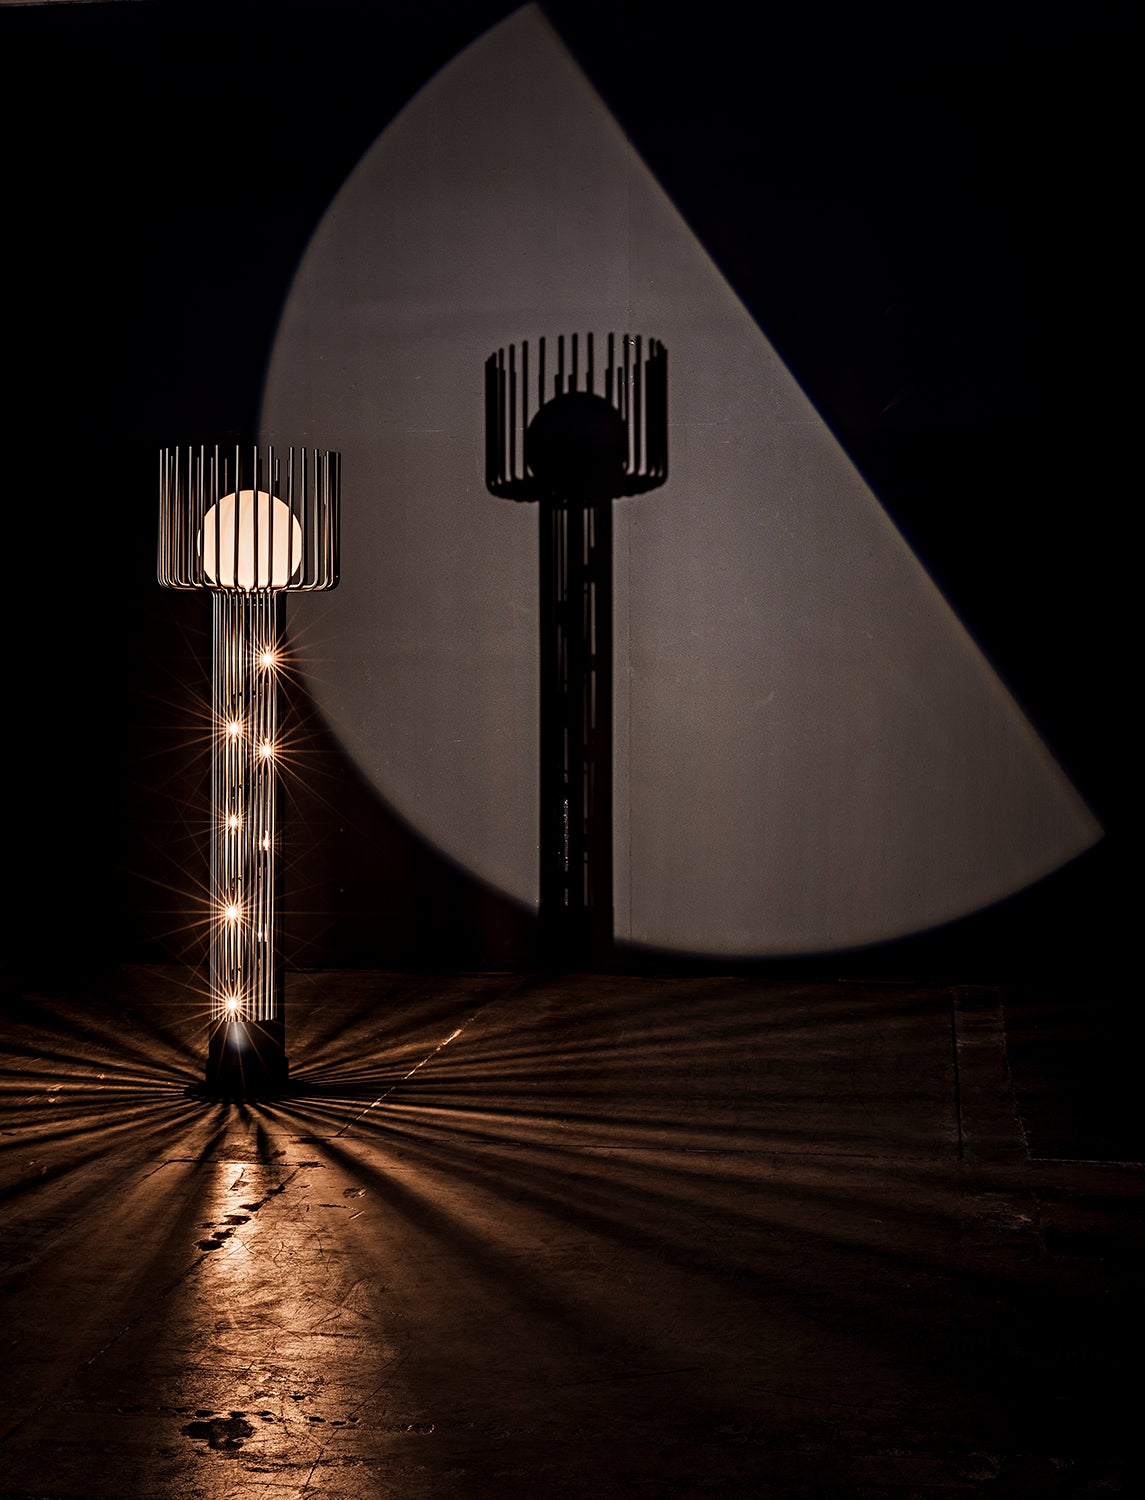 Lucis Floor Lamp, Black Steel-Floor Lamps-Noir-Sideboards and Things